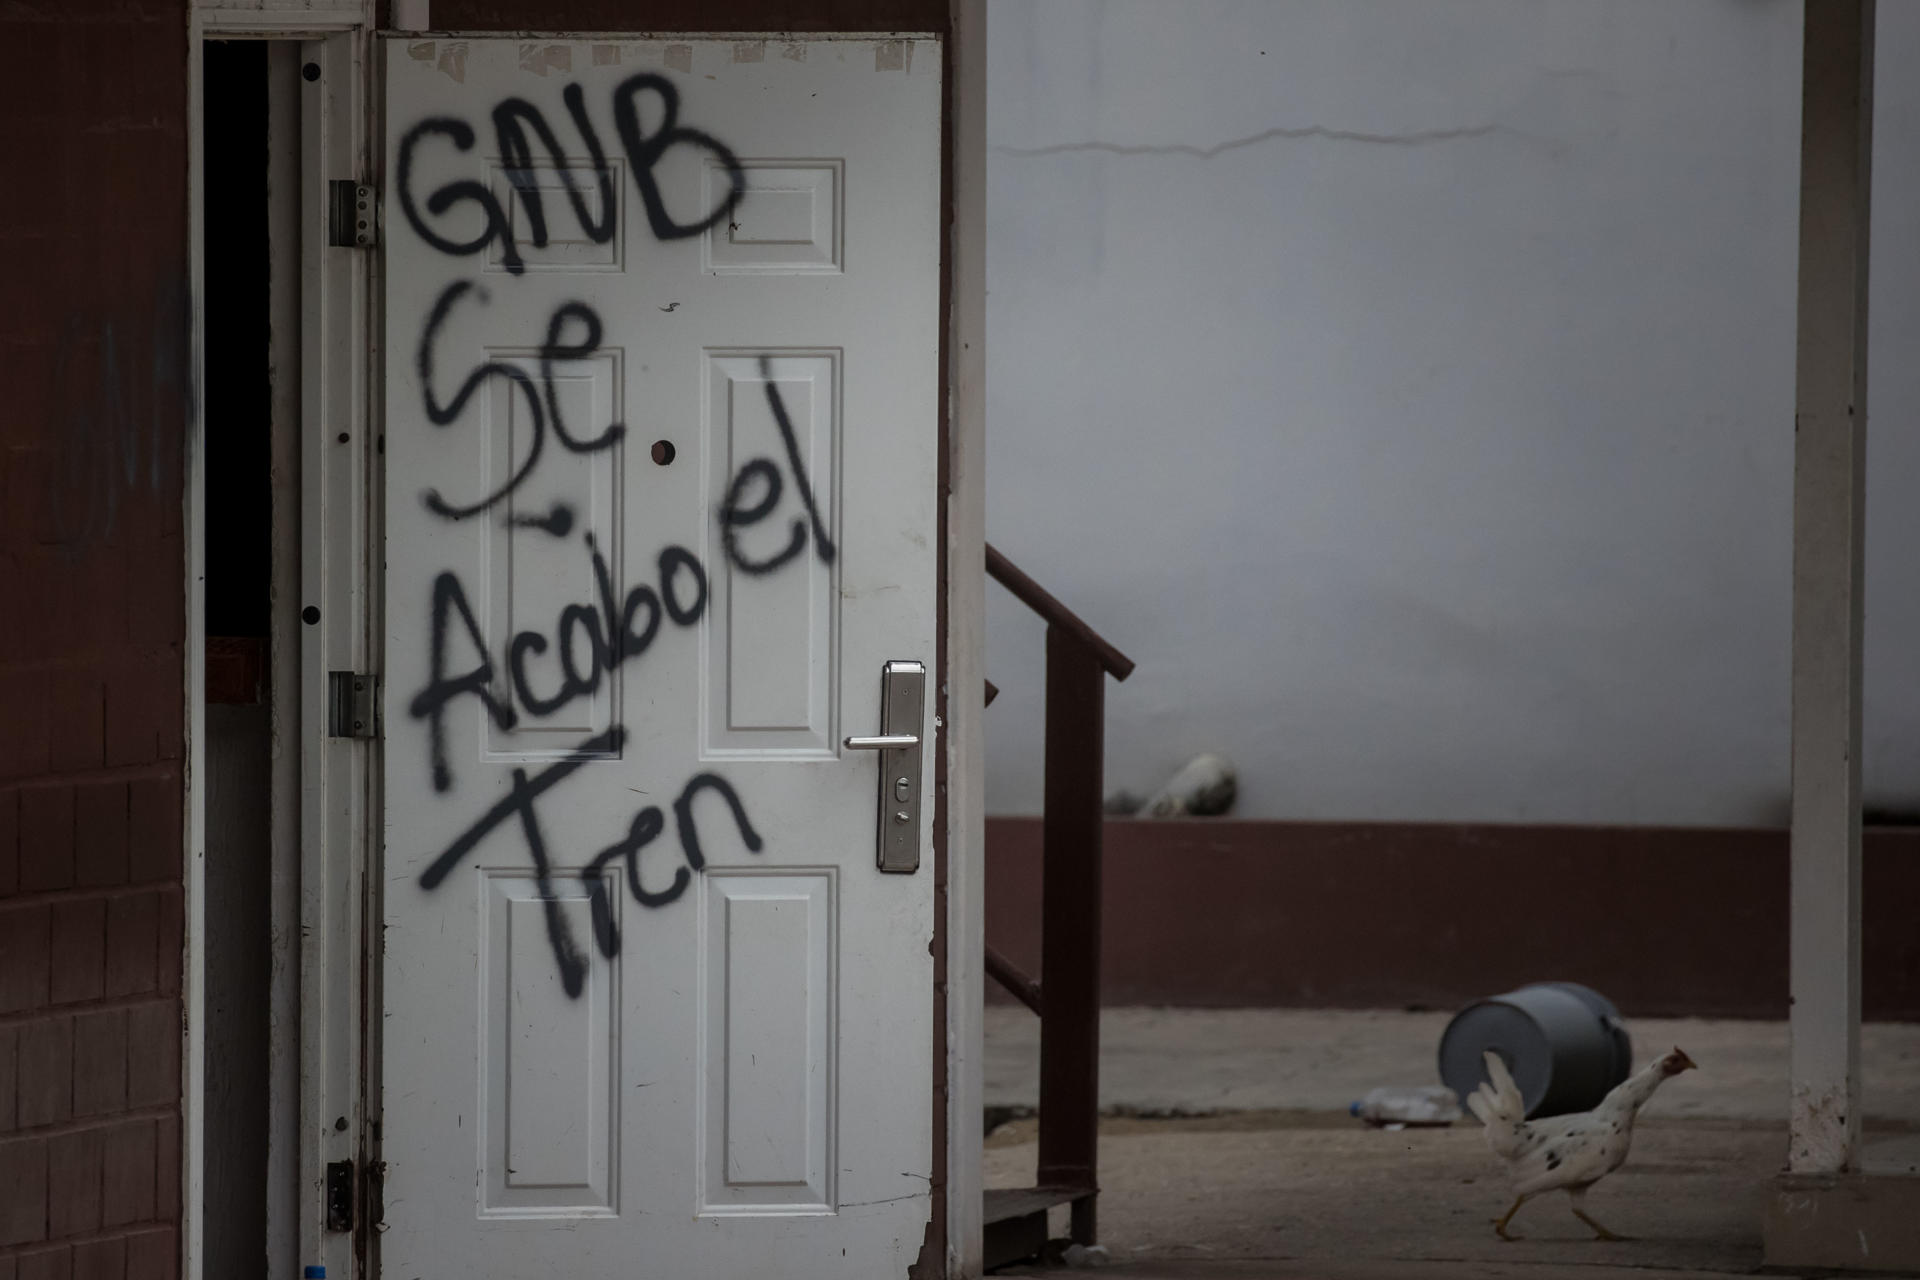 Chile dice que Venezuela “insulta” al negar existencia del Tren de Aragua